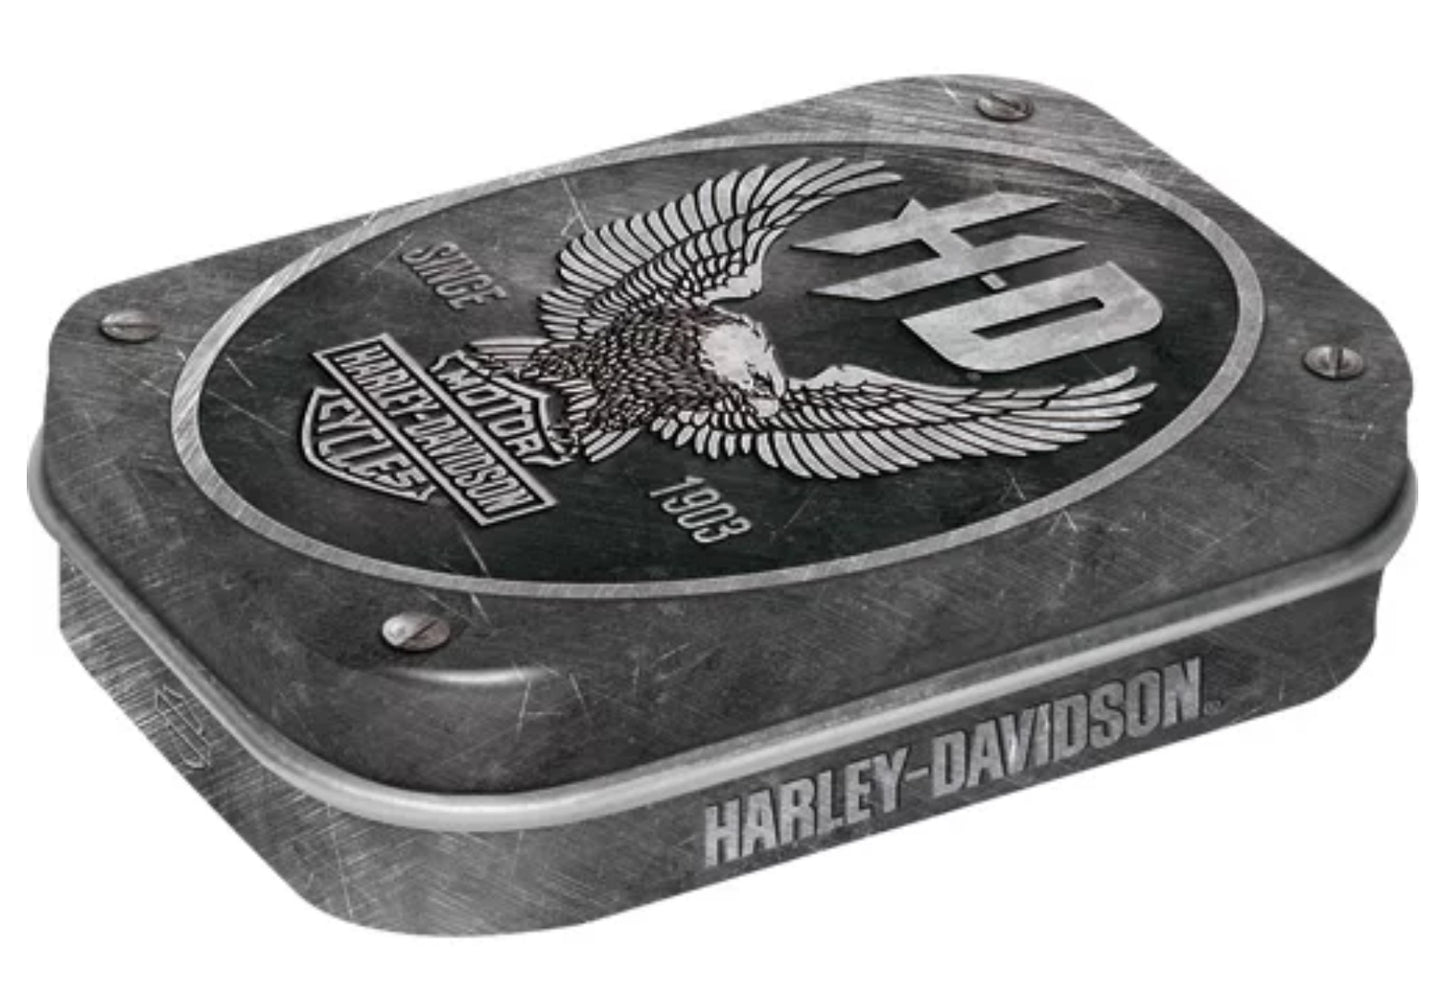 Blechdose "Harley Davidson" gefüllt mit Pfefferminzdradees